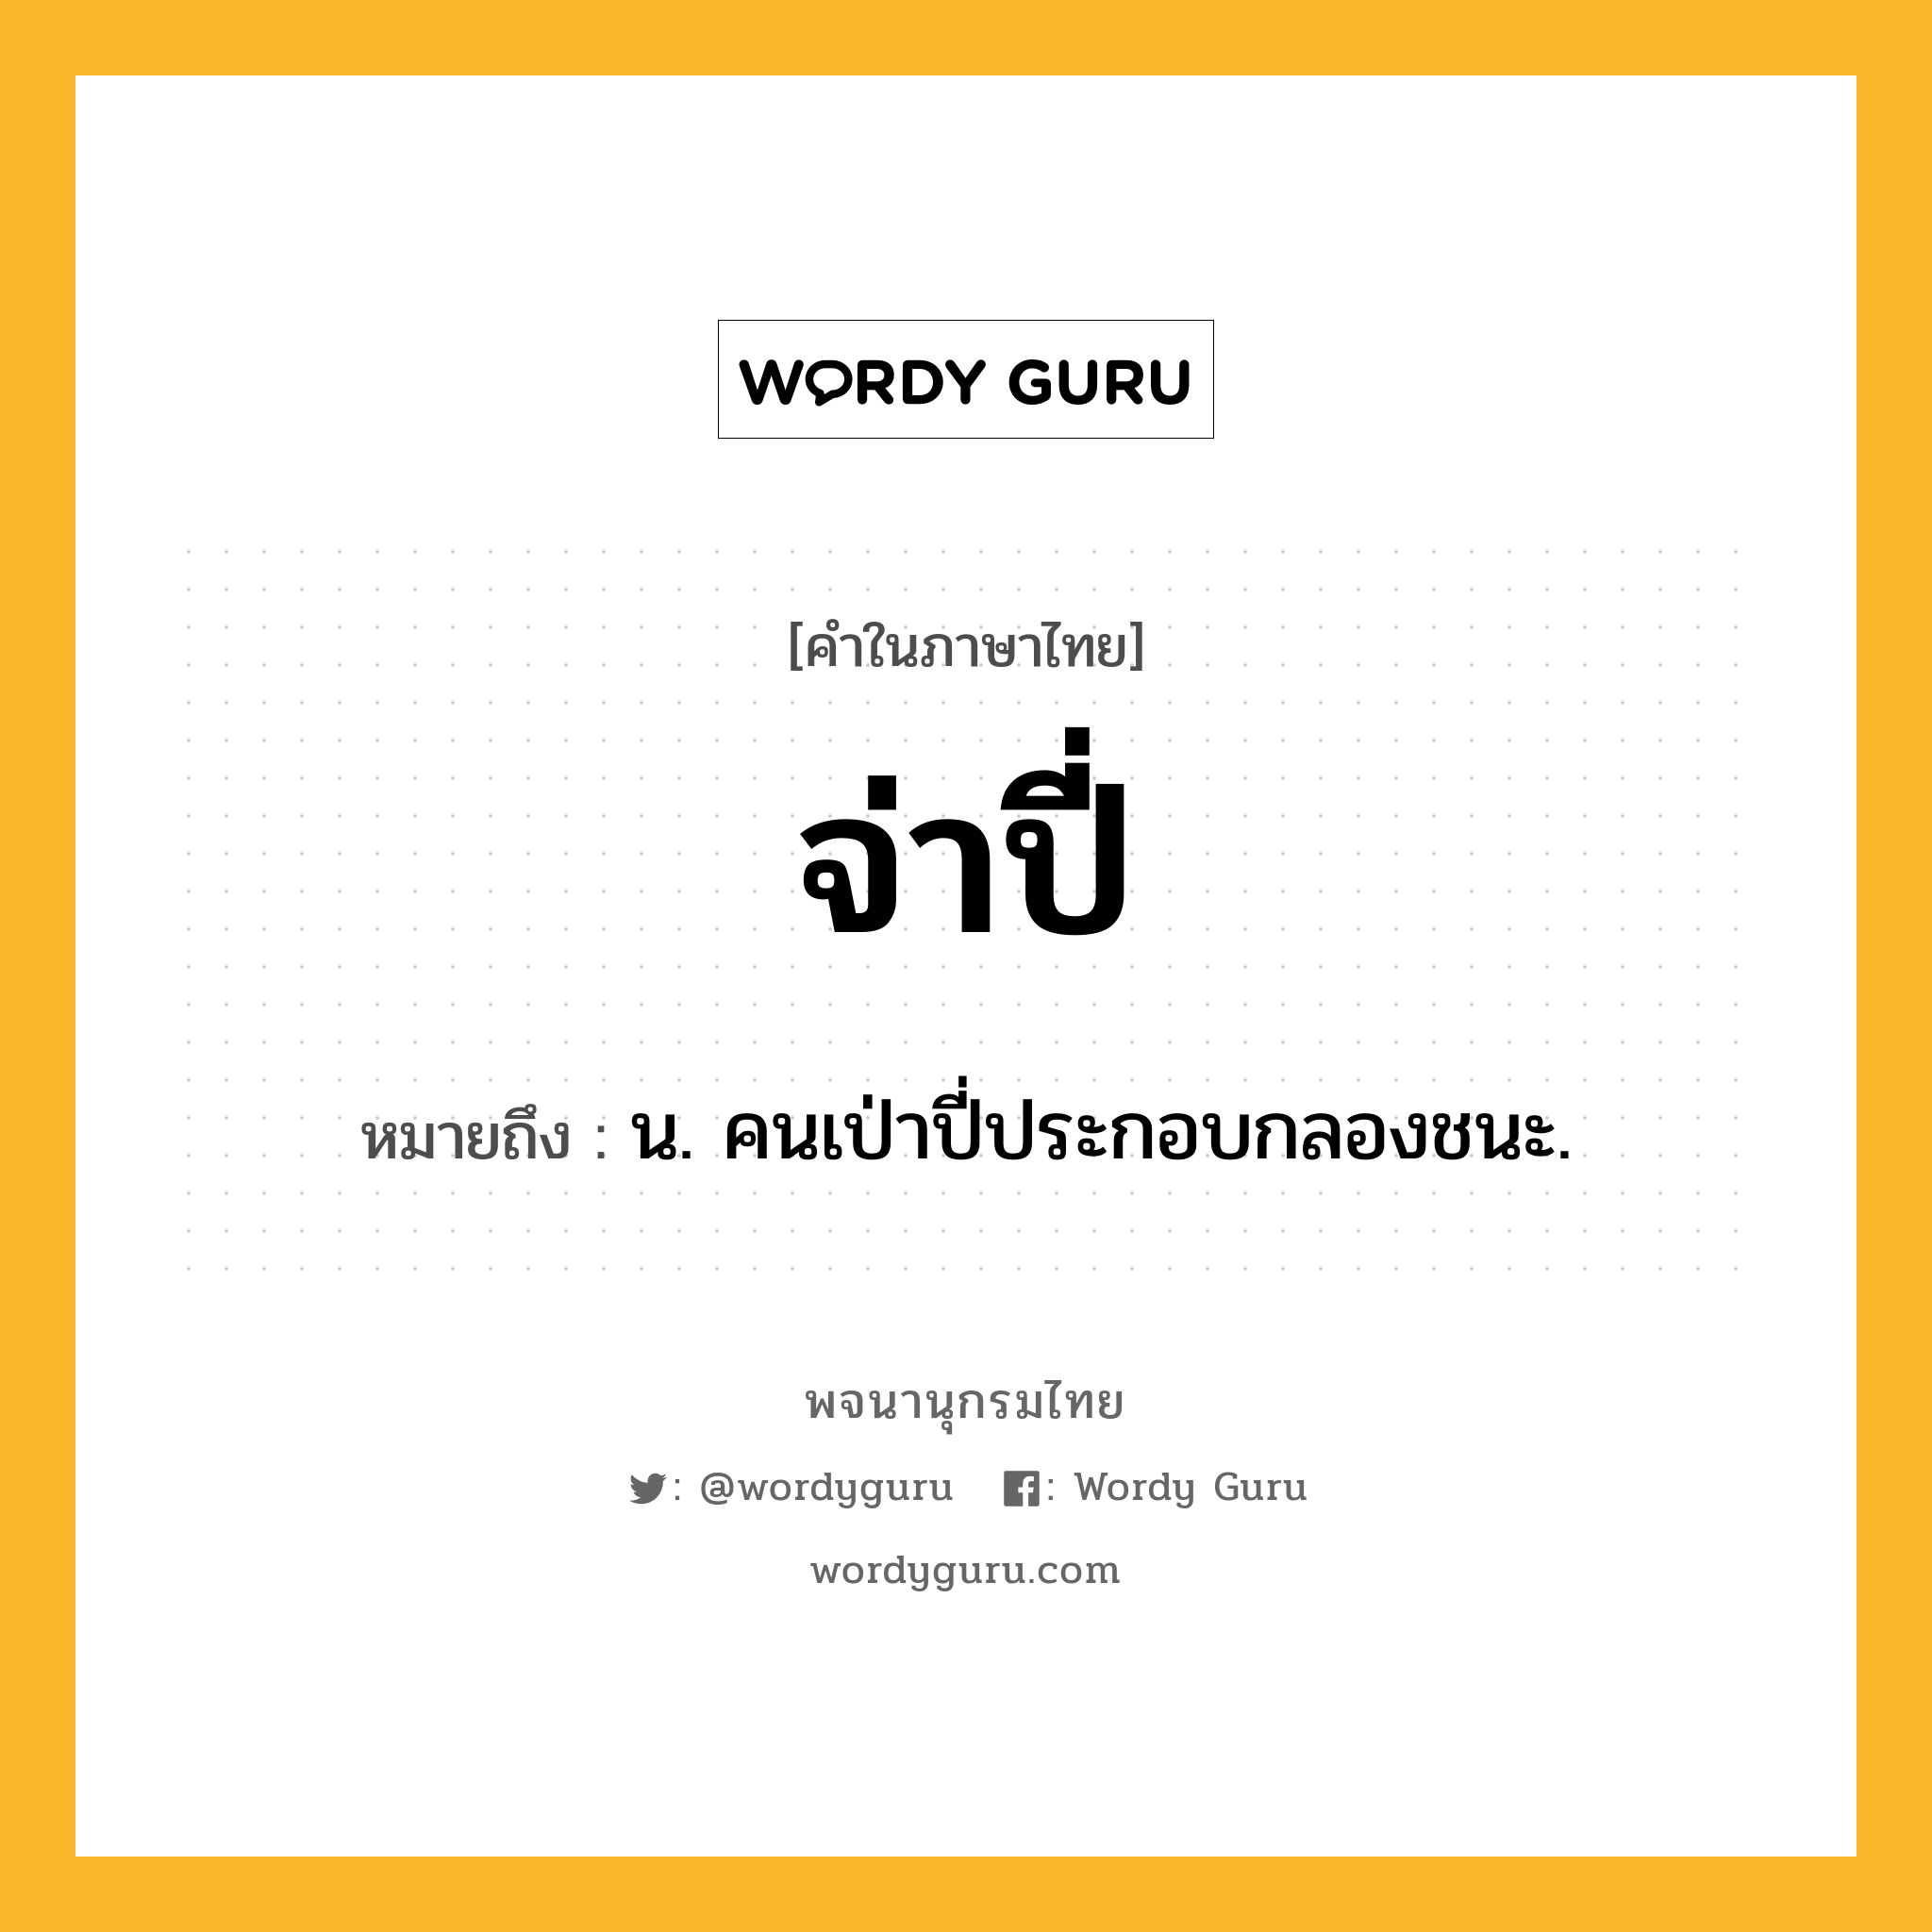 จ่าปี่ ความหมาย หมายถึงอะไร?, คำในภาษาไทย จ่าปี่ หมายถึง น. คนเป่าปี่ประกอบกลองชนะ.